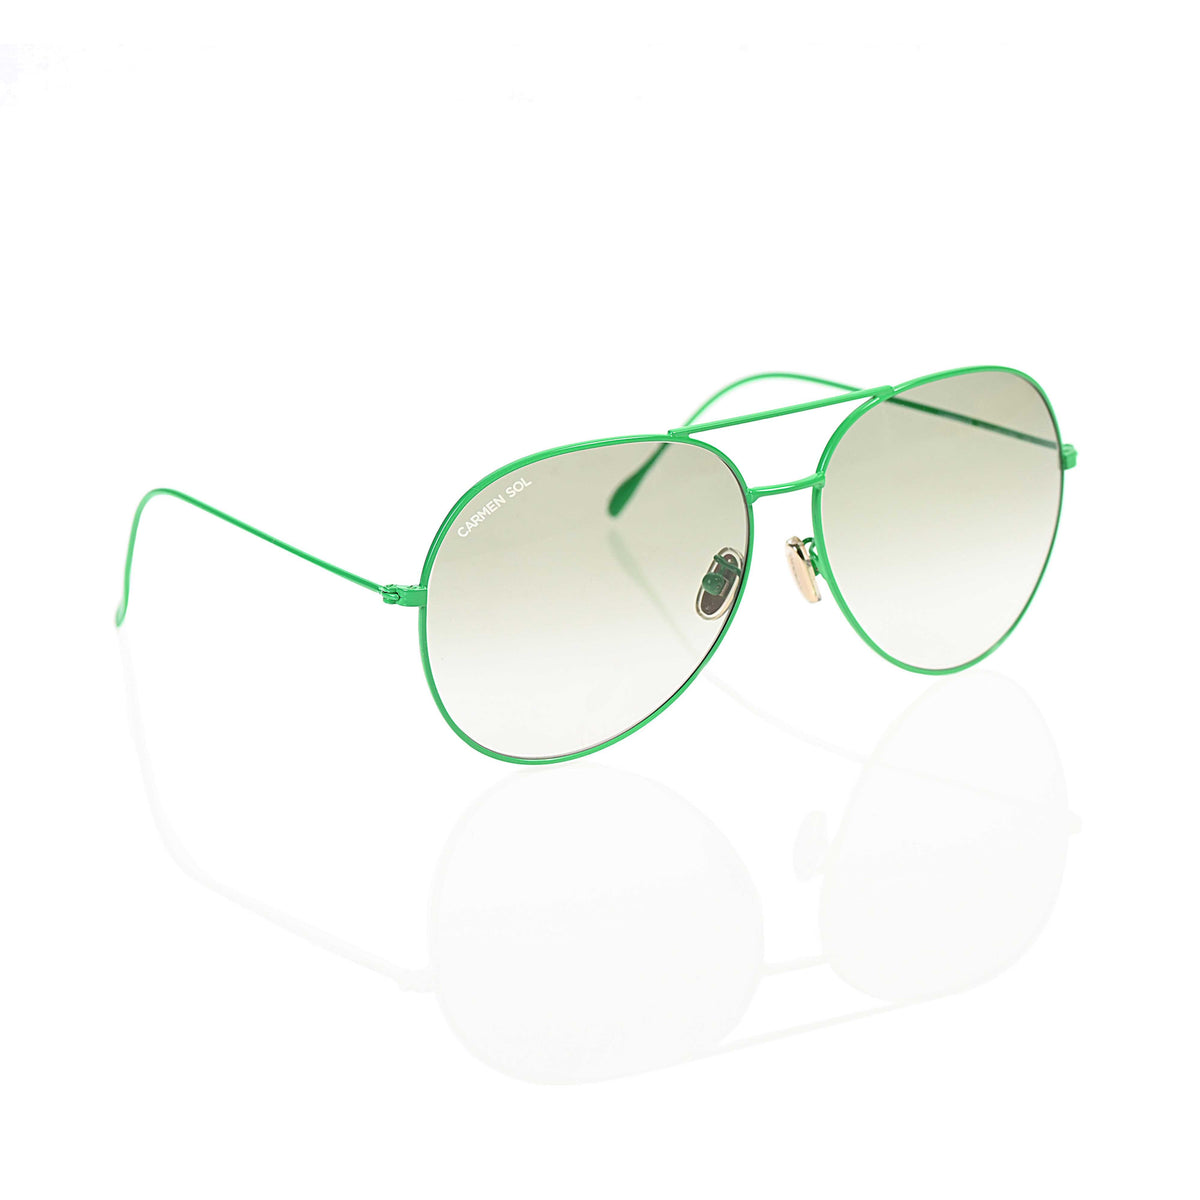 Best aviator sunglasses for women from carmen sol